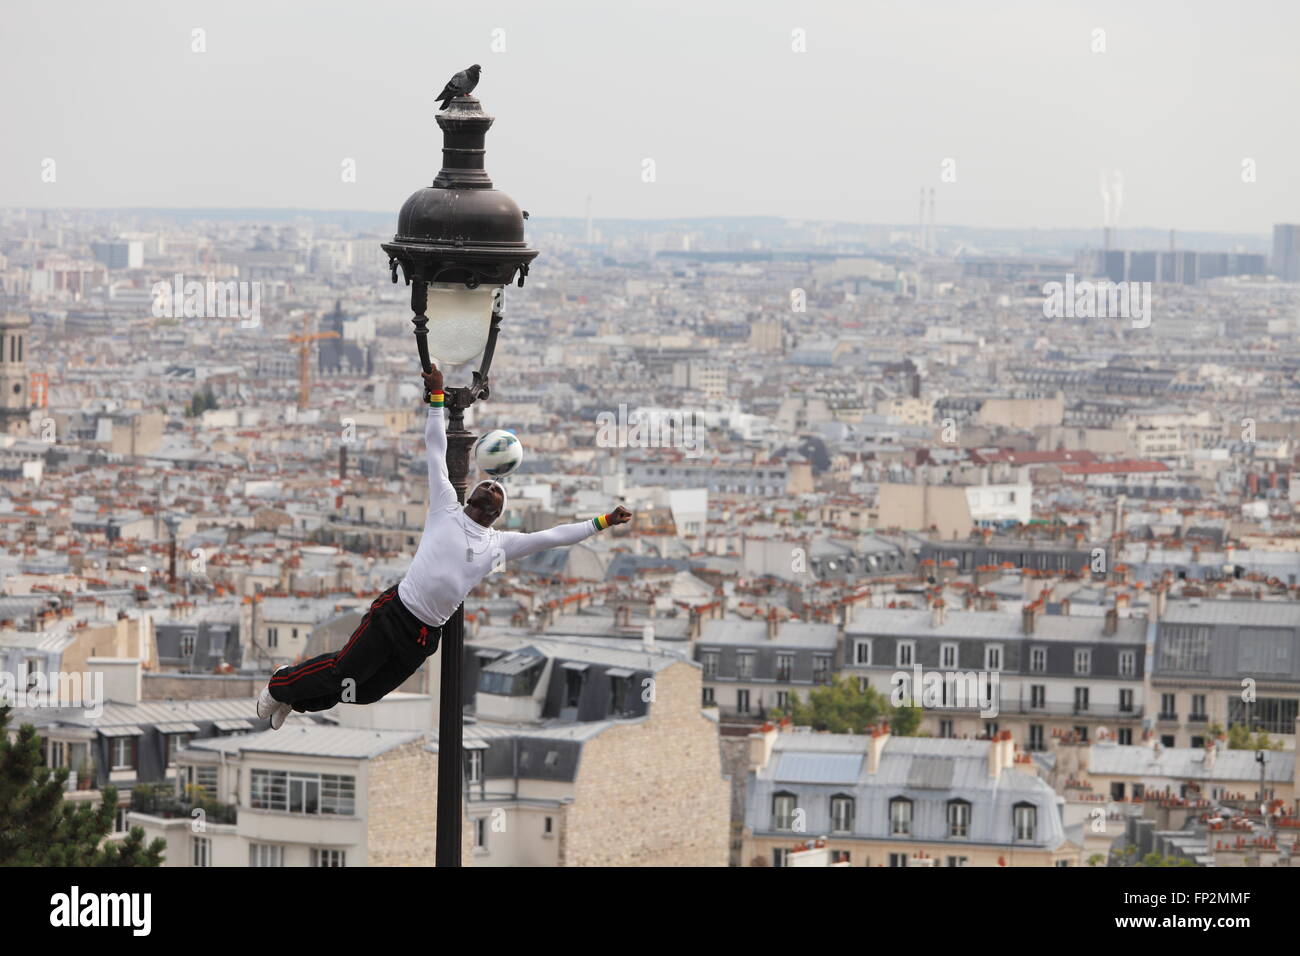 Artiste de performance acrobatique sur une vieille lampe à gaz sur la colline du Sacré Coeur de Montmartre - Paris, France Banque D'Images